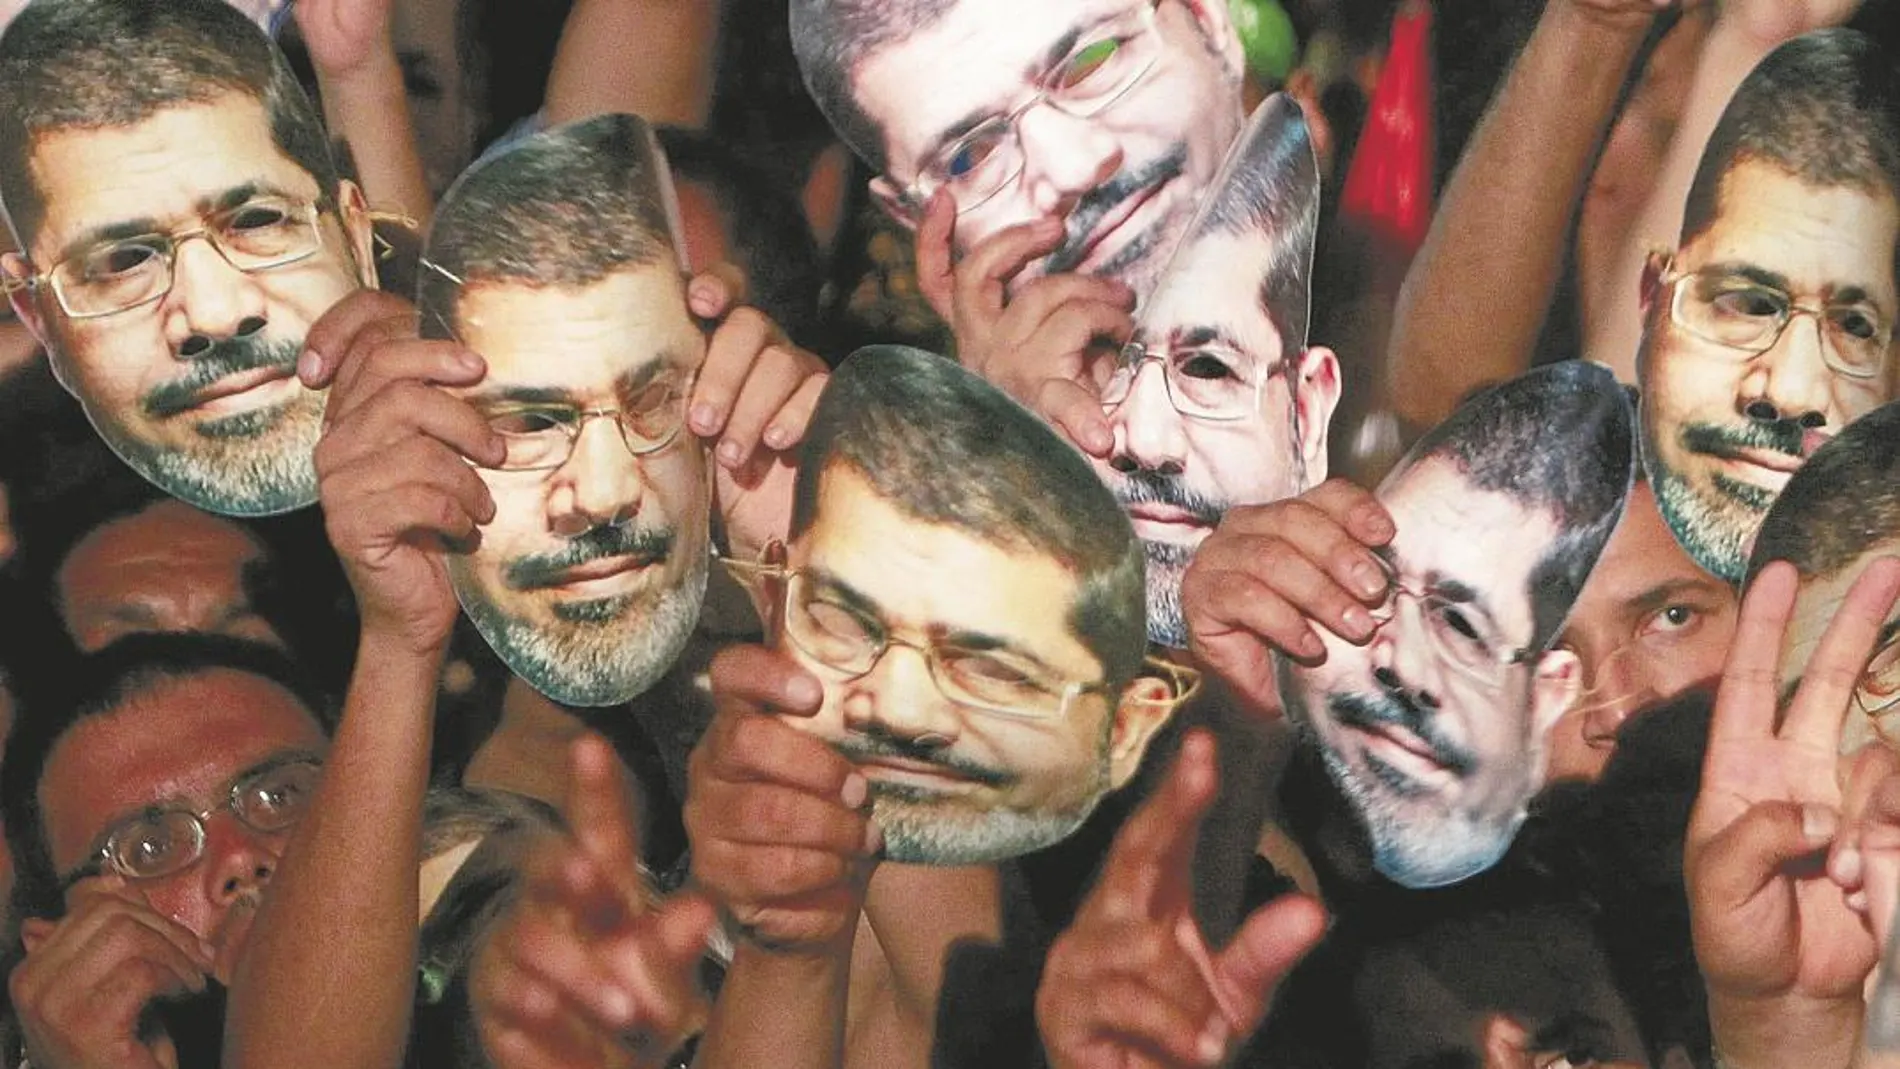 Decenas de seguidores visten máscaras con el rostro del presidente Mursi durante una manifestación el 12 de julio de 2013/Reuters